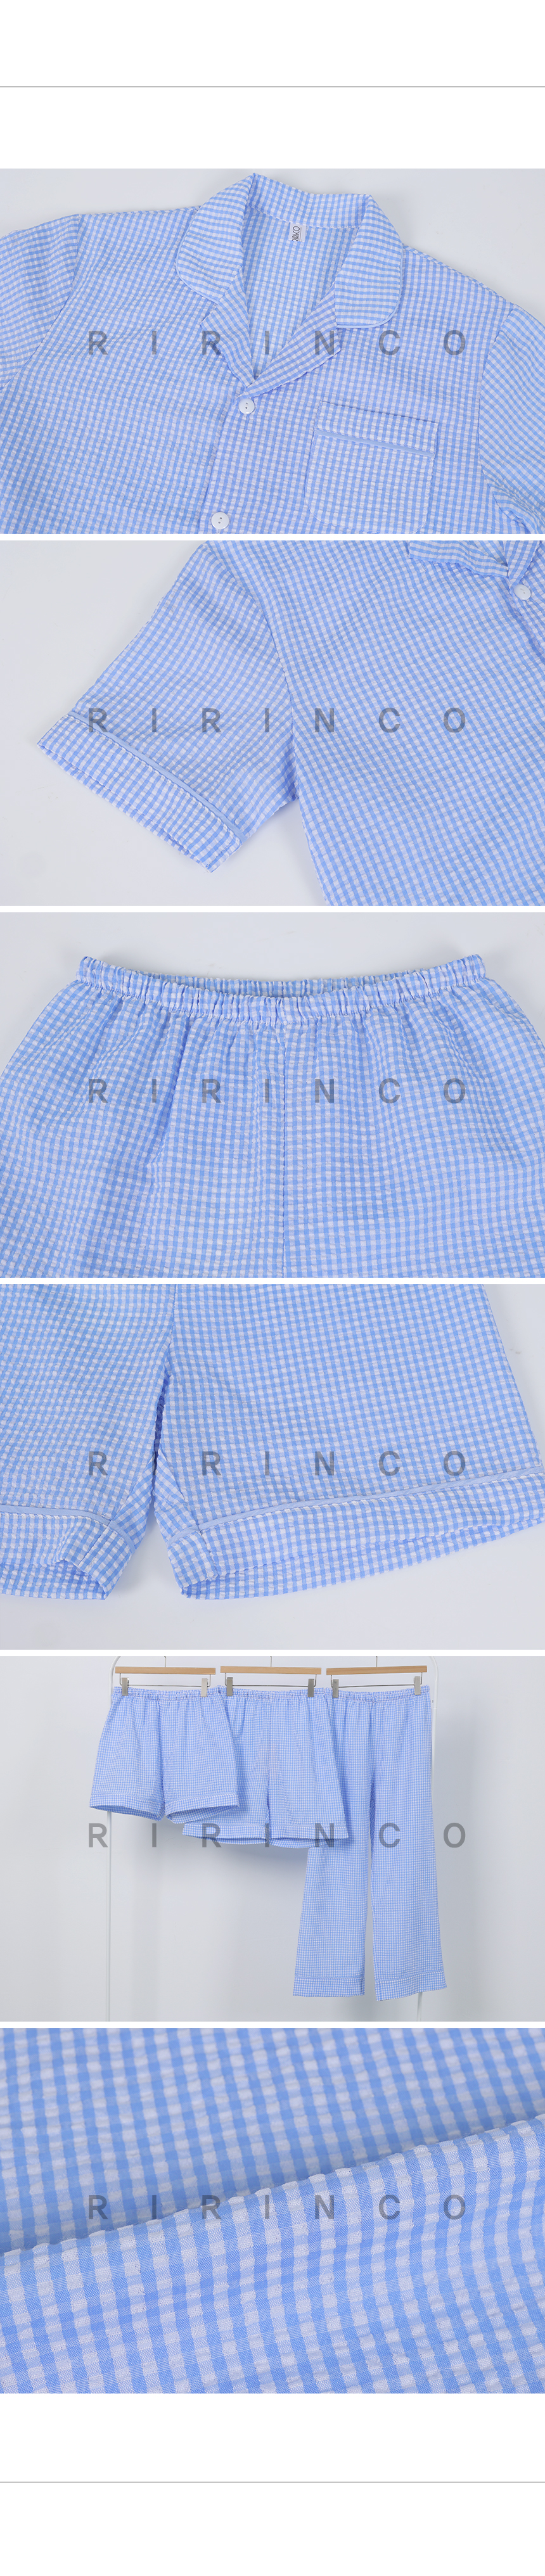 RIRINCO チェック柄パイピングパジャマ上下セット